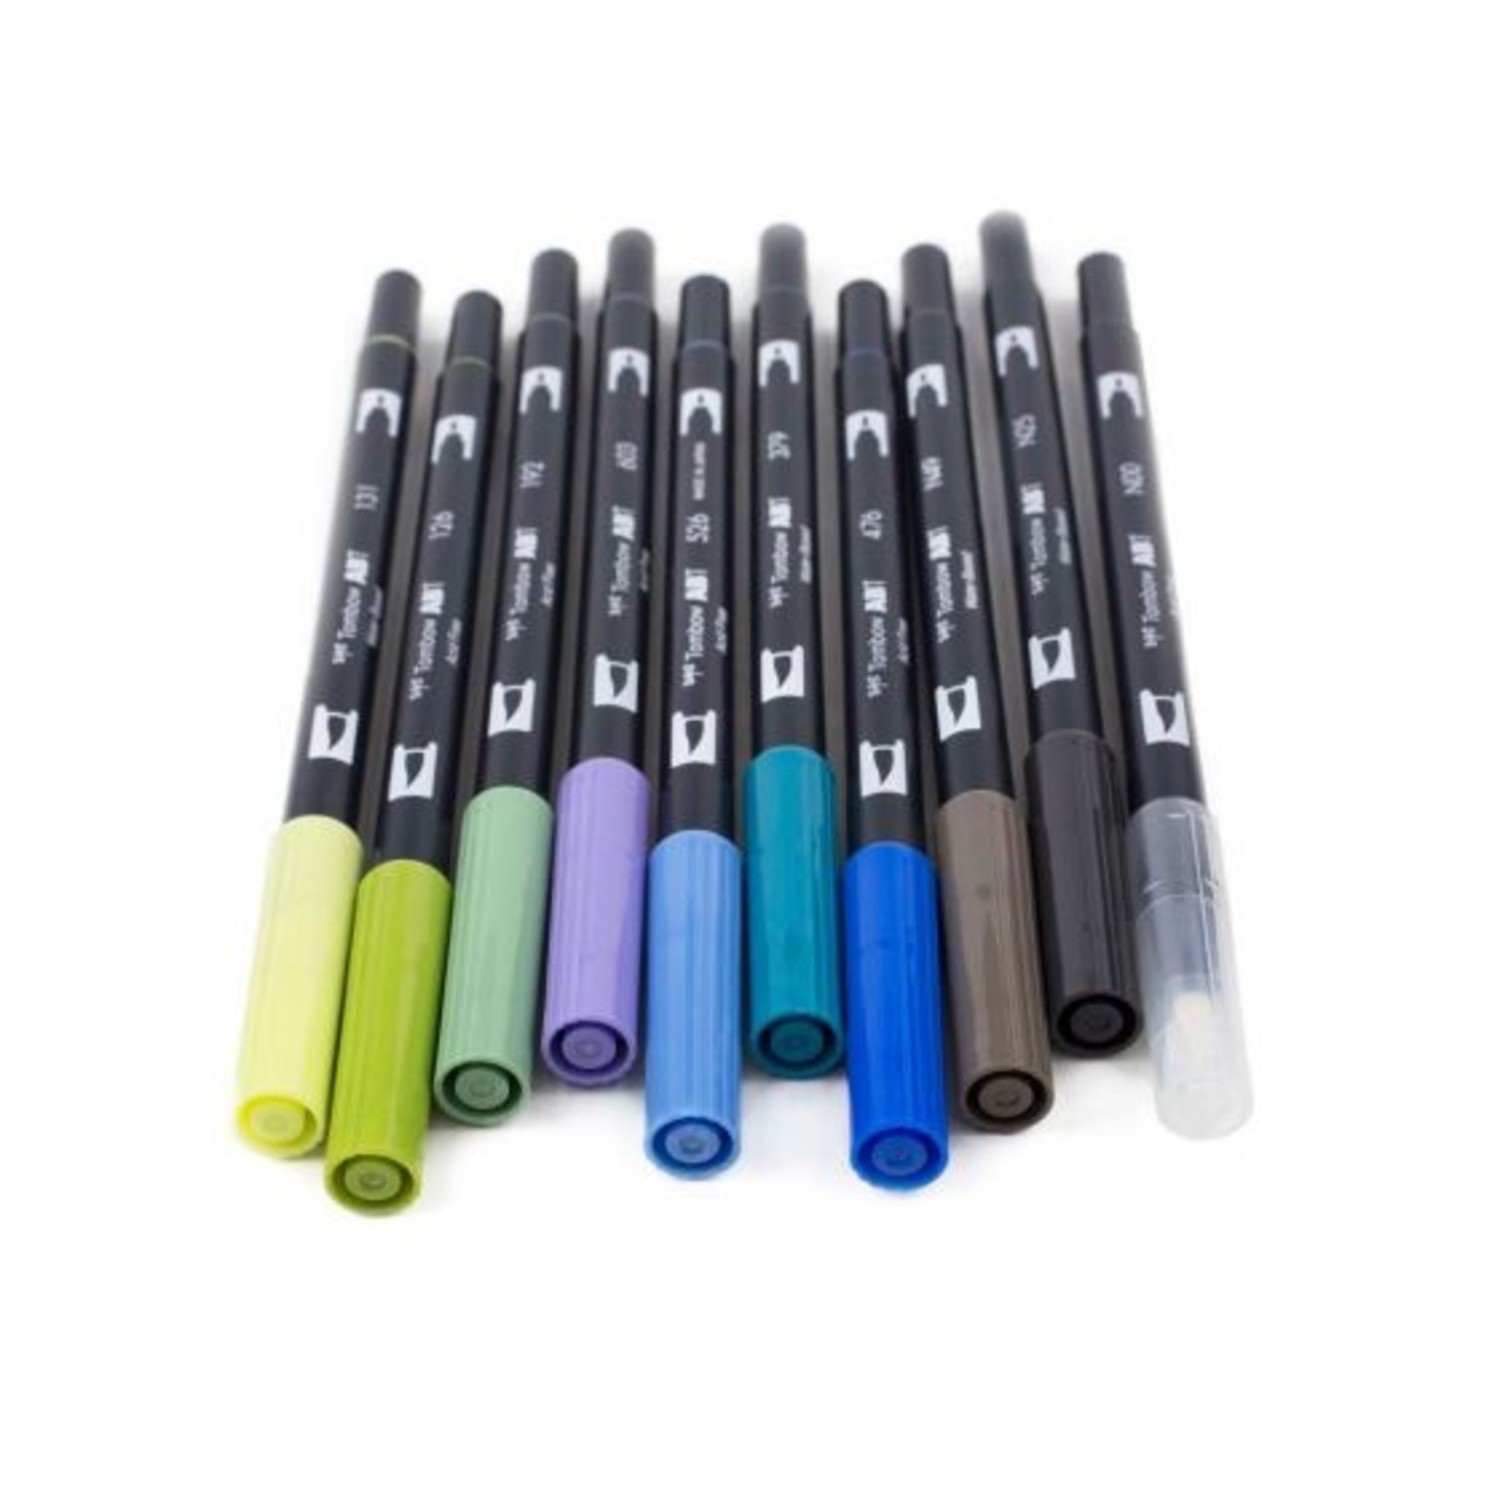 Tombow ABT 126 Dual Brush Pen - Light Olive